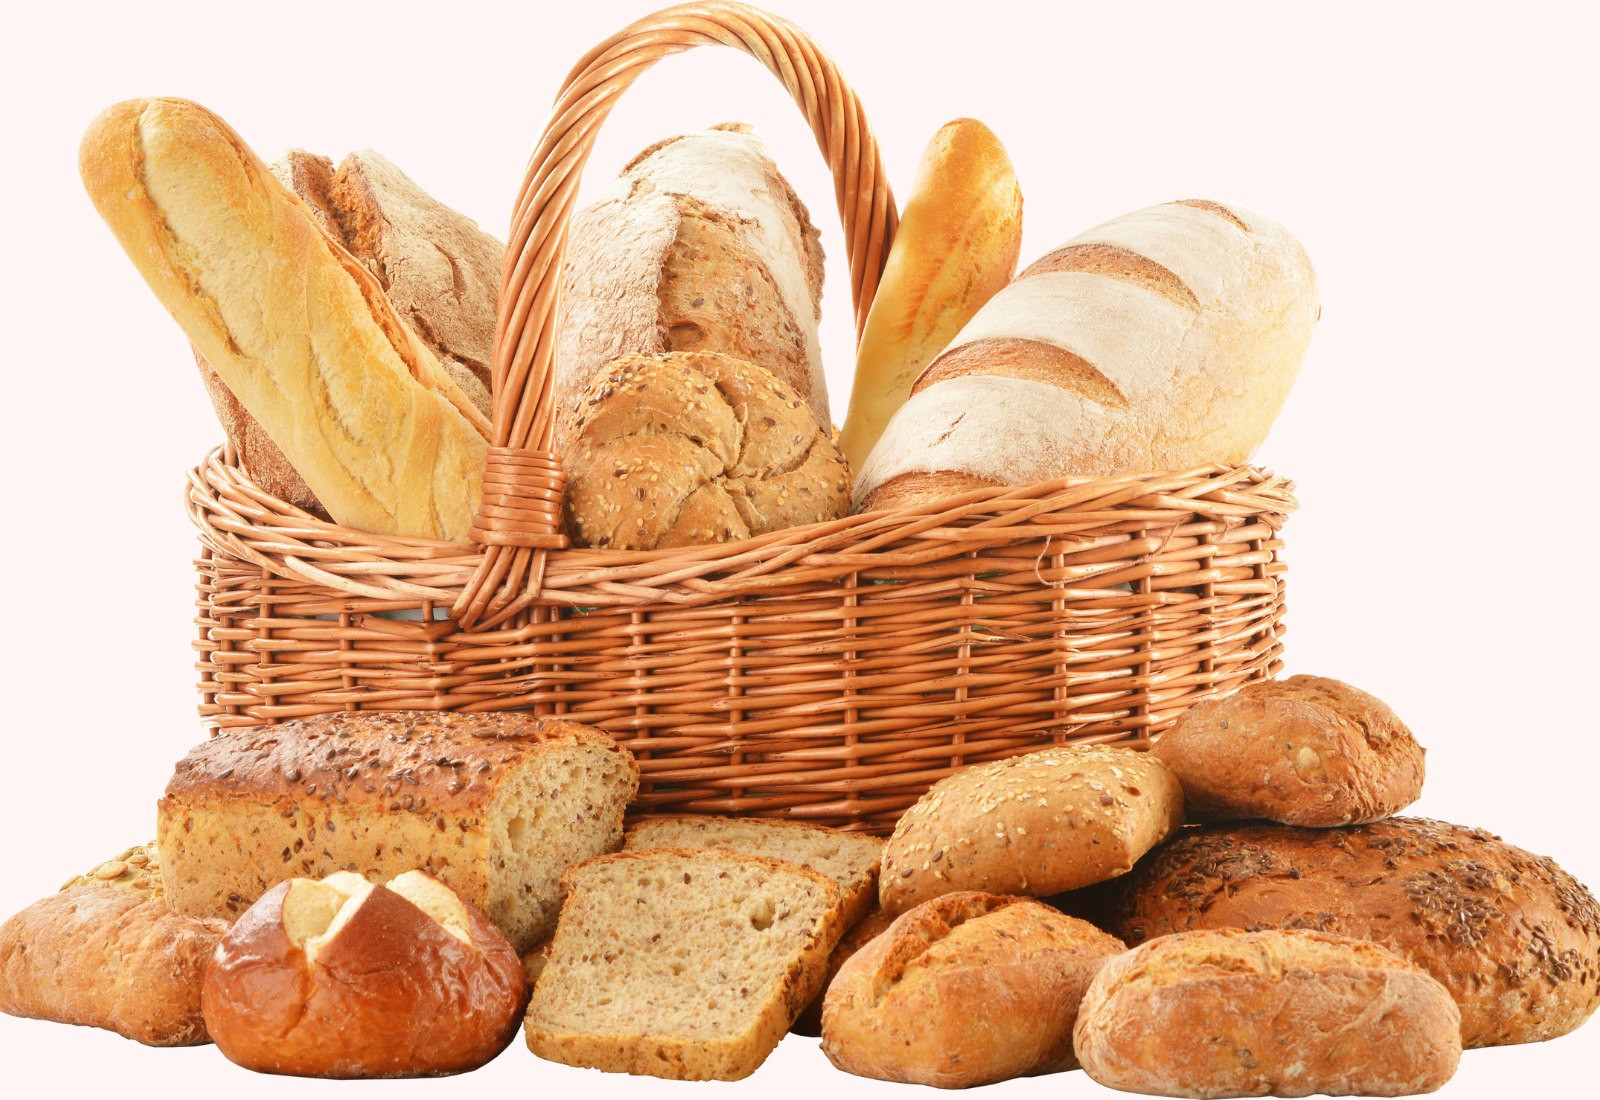  Bánh mì là món ăn tiện lợi mang lại rất nhiều lợi ích cho sức khỏe